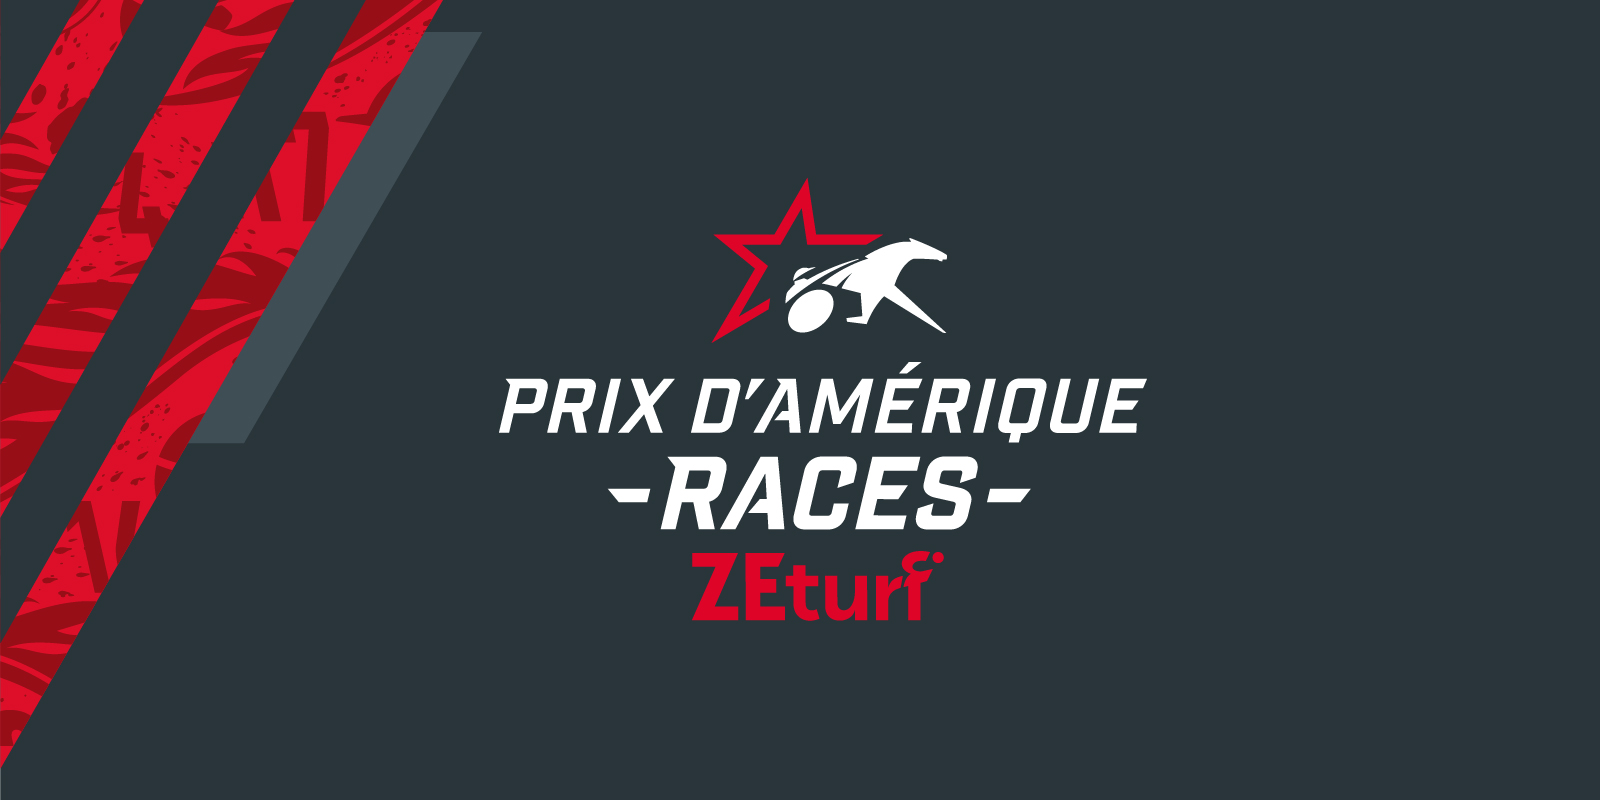 Cas_Agence_LeTROT_prix_damérique_races_zeturf_logo